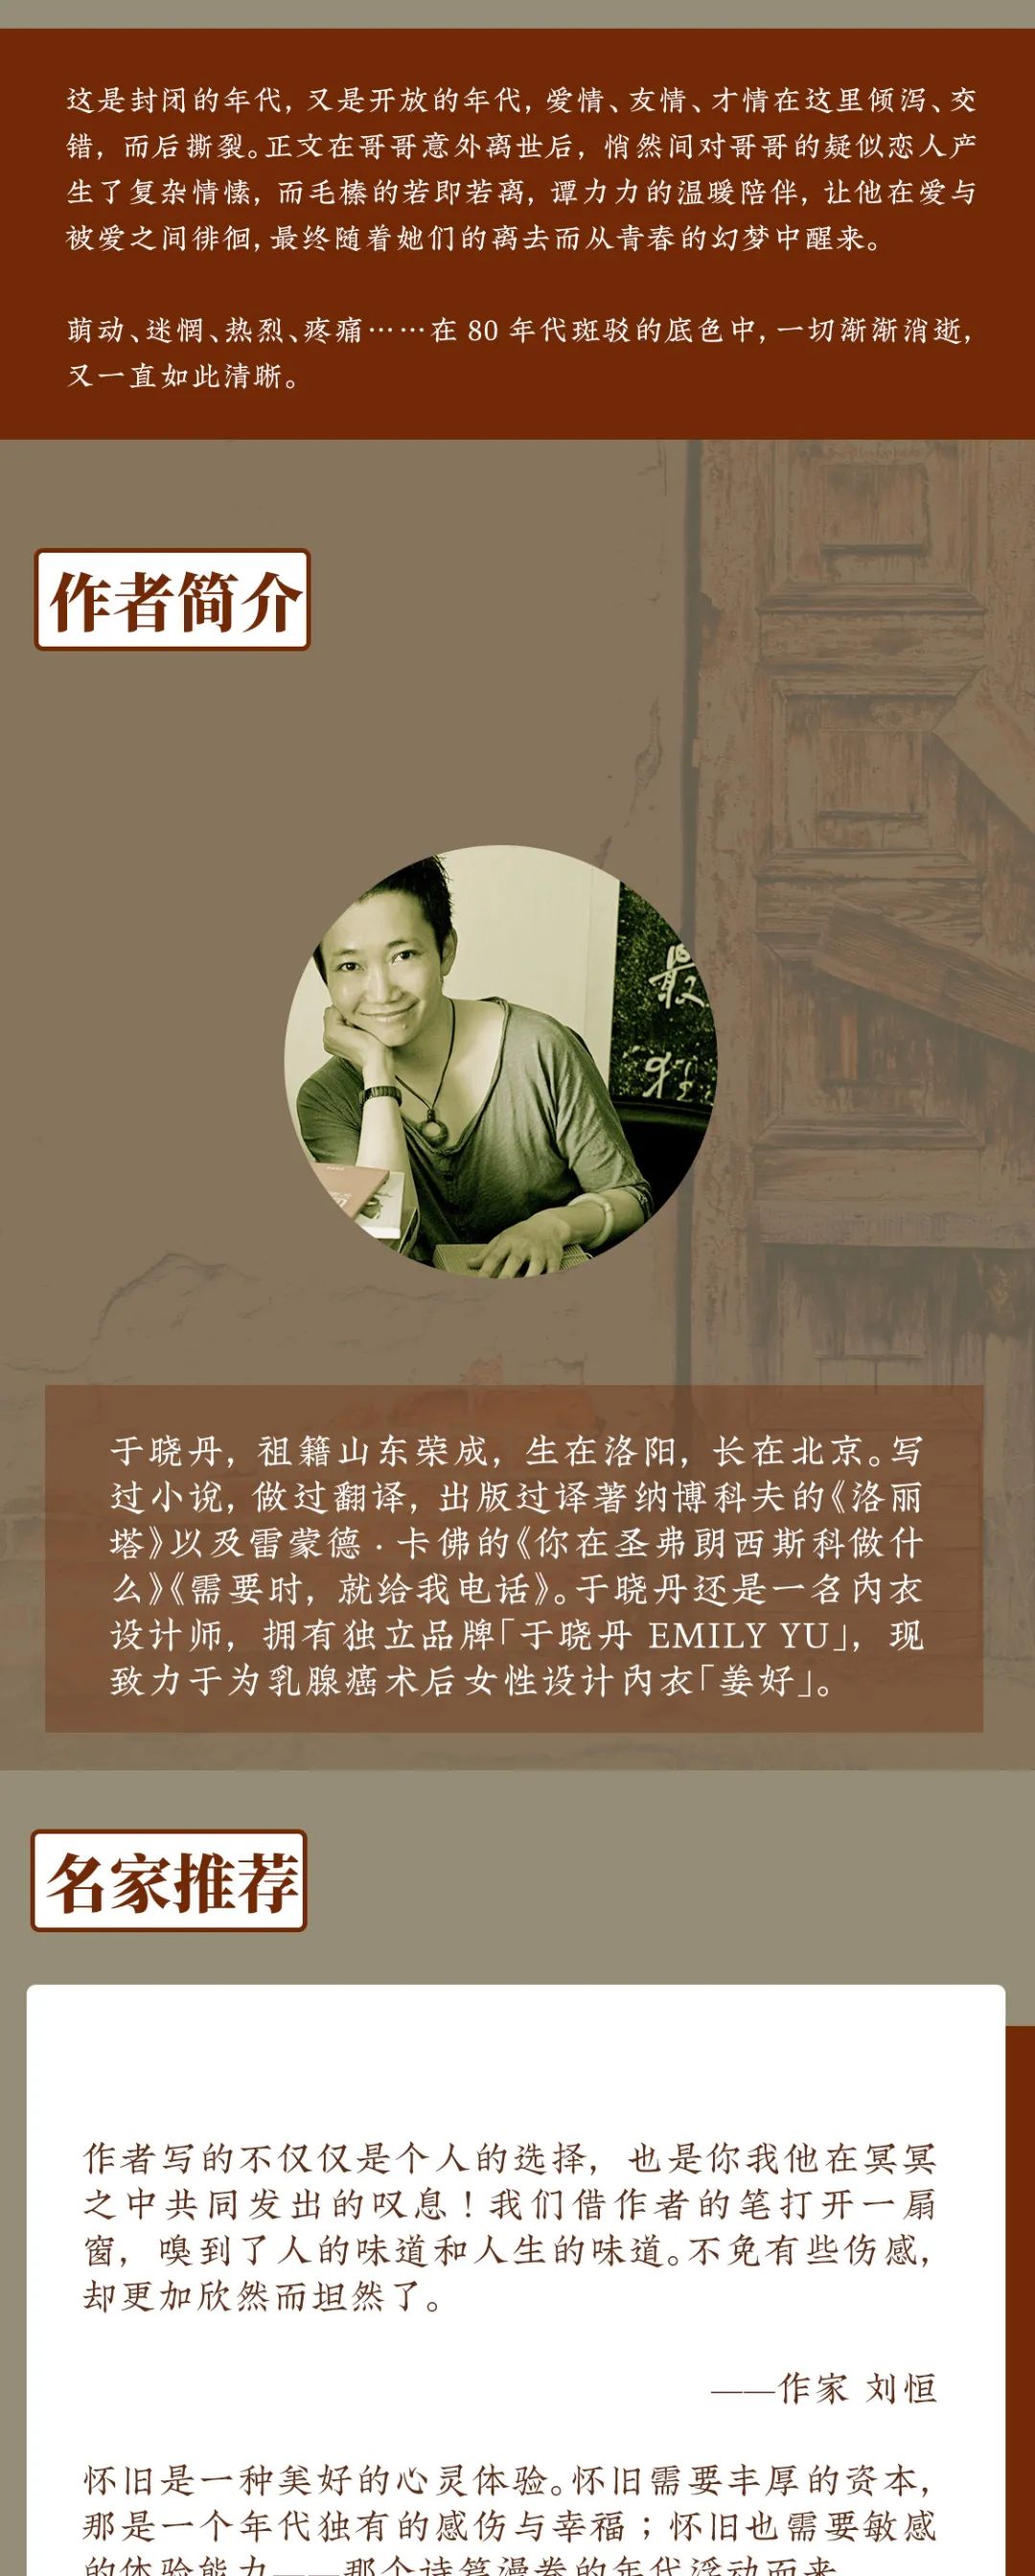 《北京1980》新装面世，梅峰导演、李现春夏主演电影原著小说